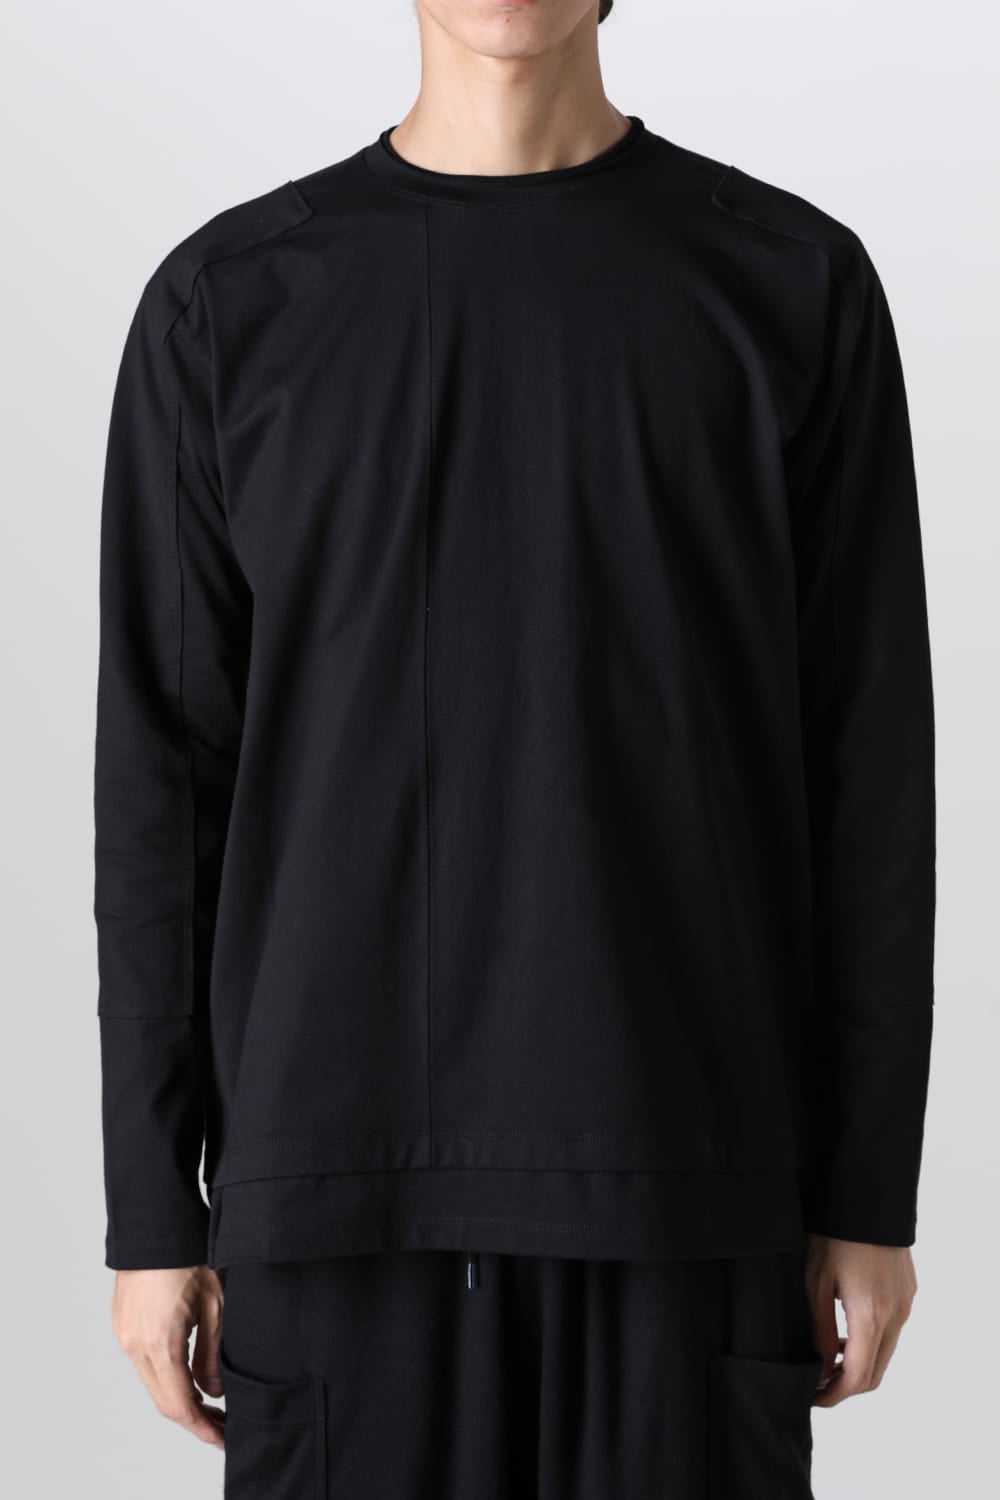 44cm着丈ヴィリジアン Tシャツ カットソー 七分袖 タートルネック コットン 1 S 黒